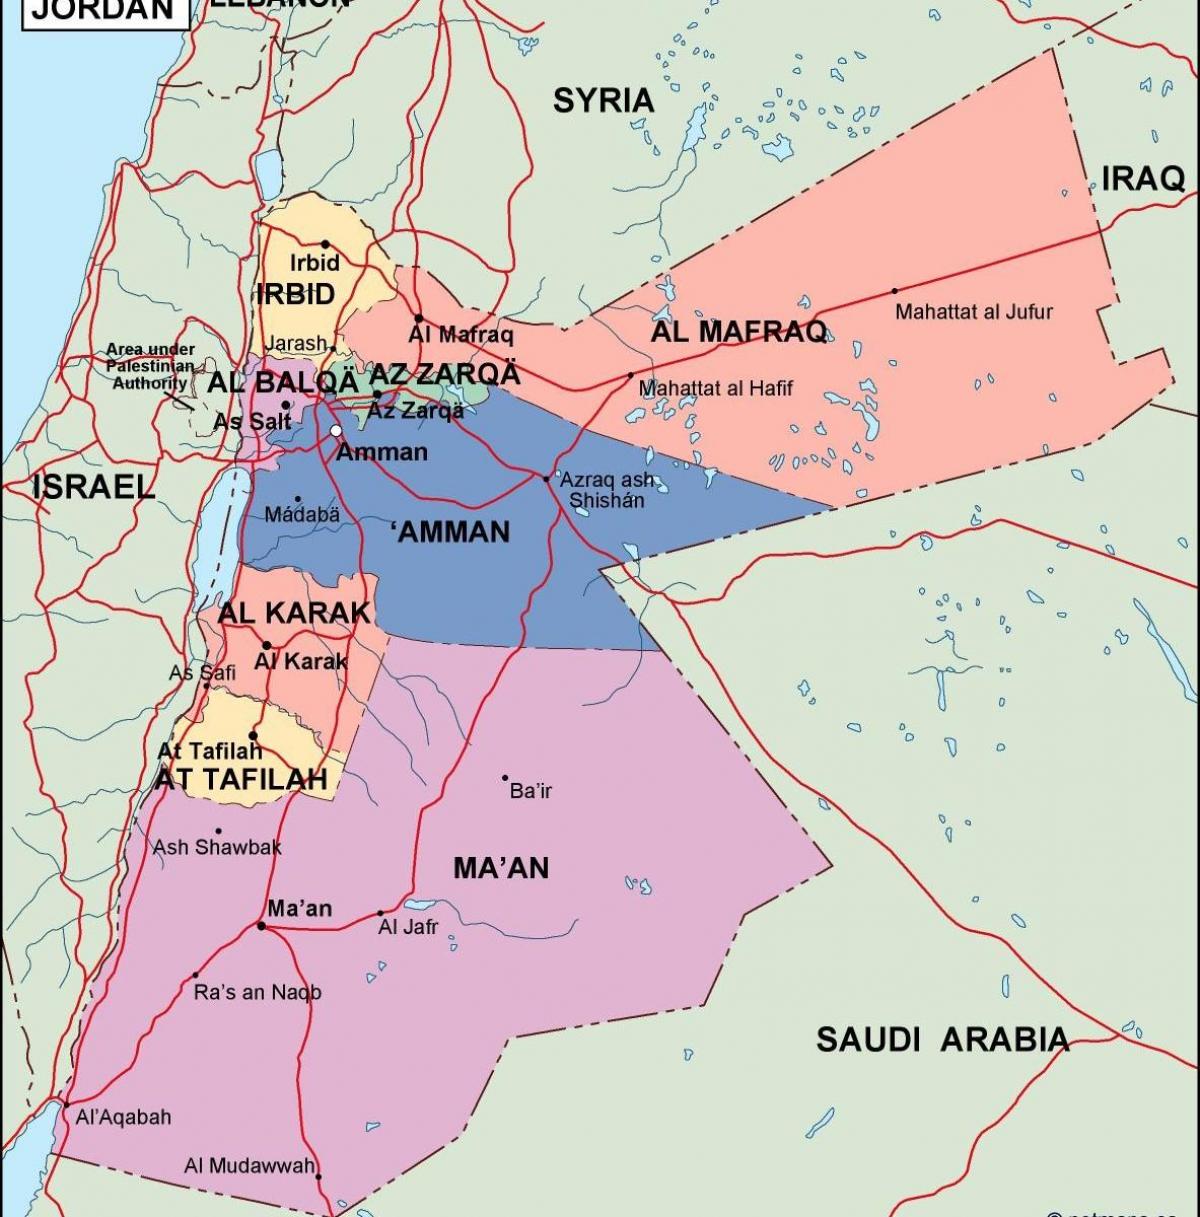 bản đồ của Jordan chính trị